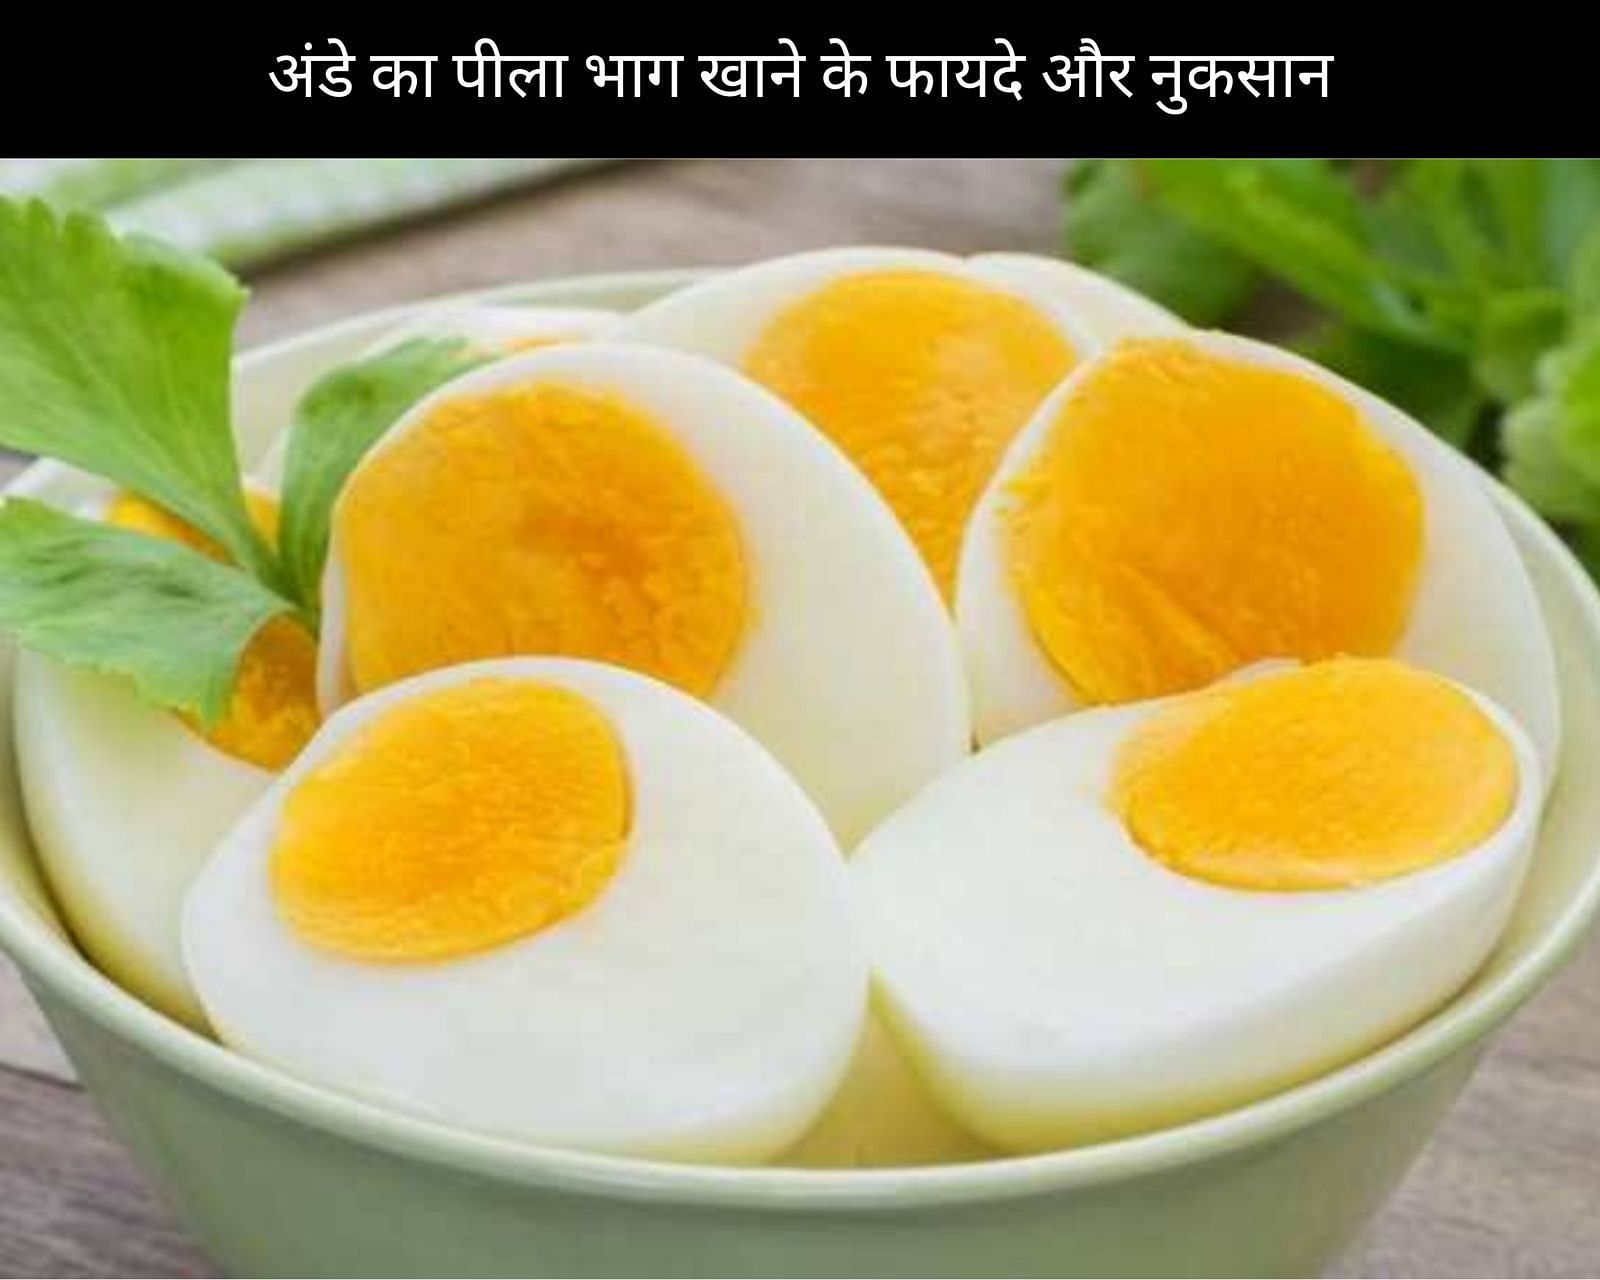 अंडे का पीला भाग खाने के 5 फायदे और 5 नुकसान (फोटो - sportskeedaहिन्दी)